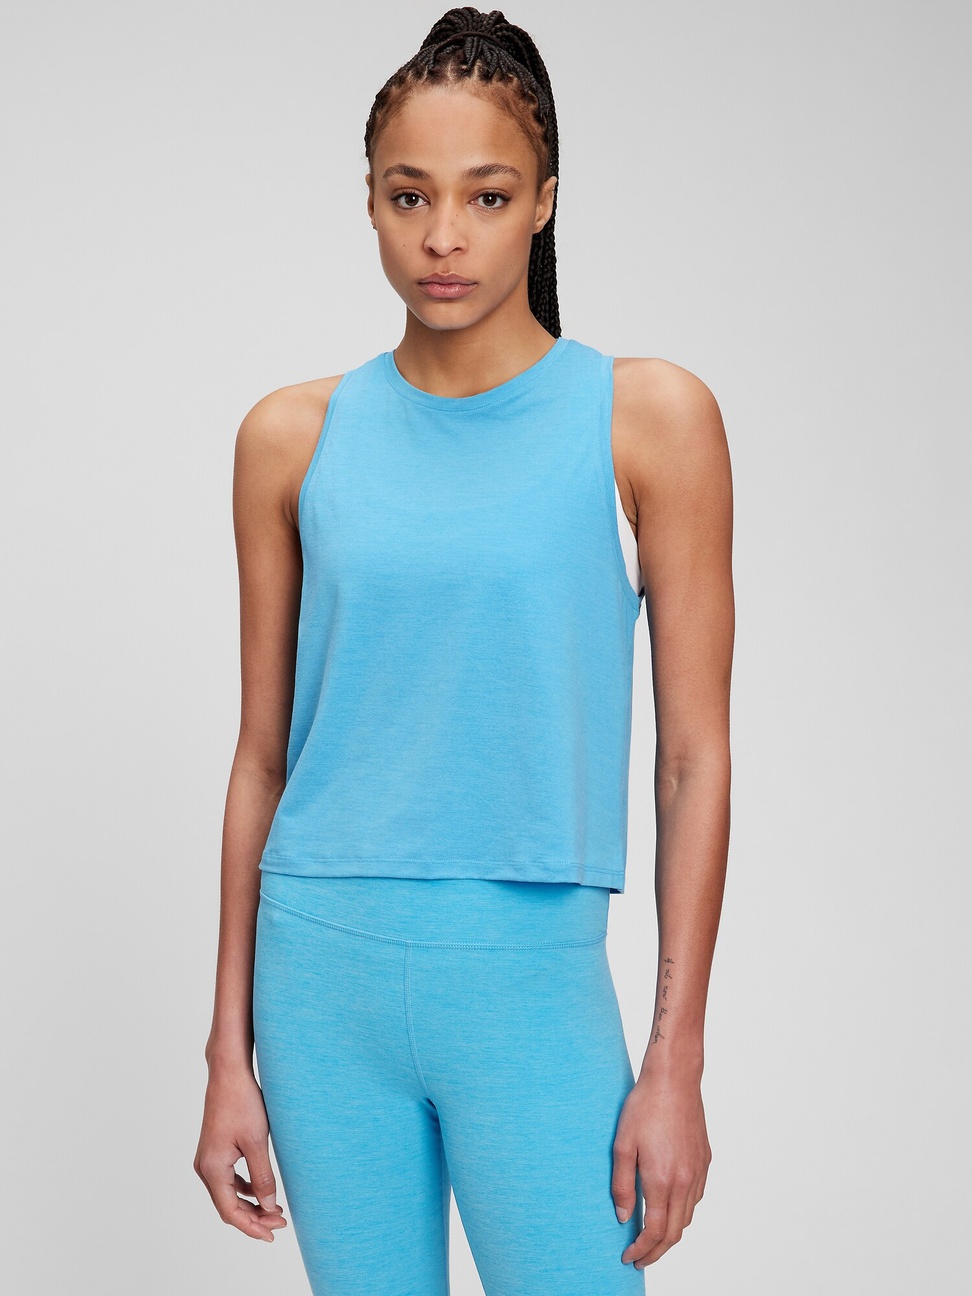 女裝|素色透氣無袖運動T恤 Gap Fit運動系列-亮藍色